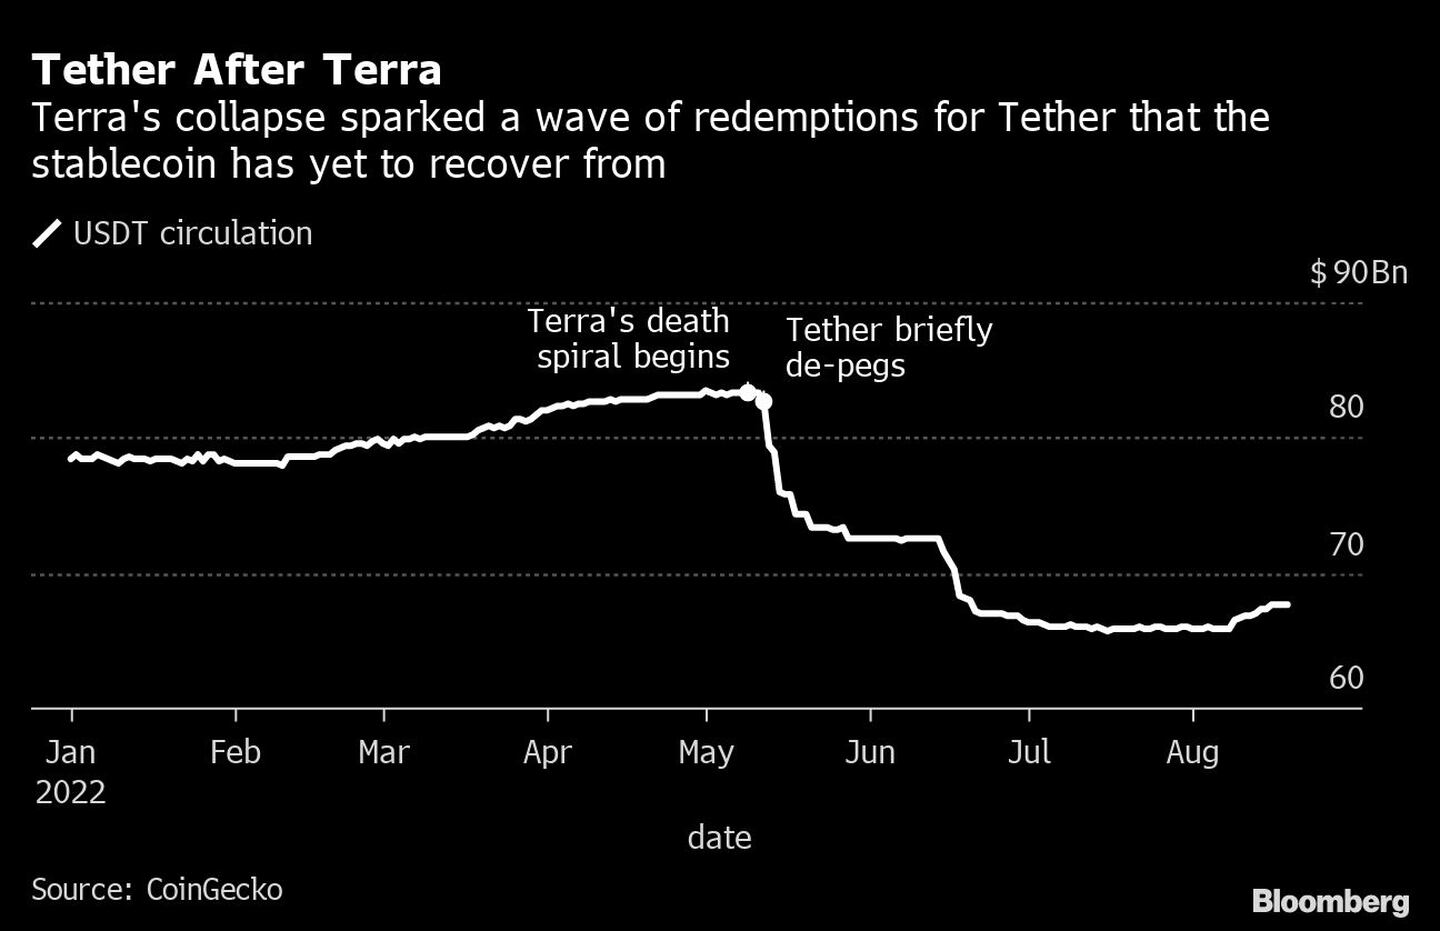 El colapso de Terra provocó una ola de reembolsos para Tether de la que la stablecoin aún no se ha recuperadodfd